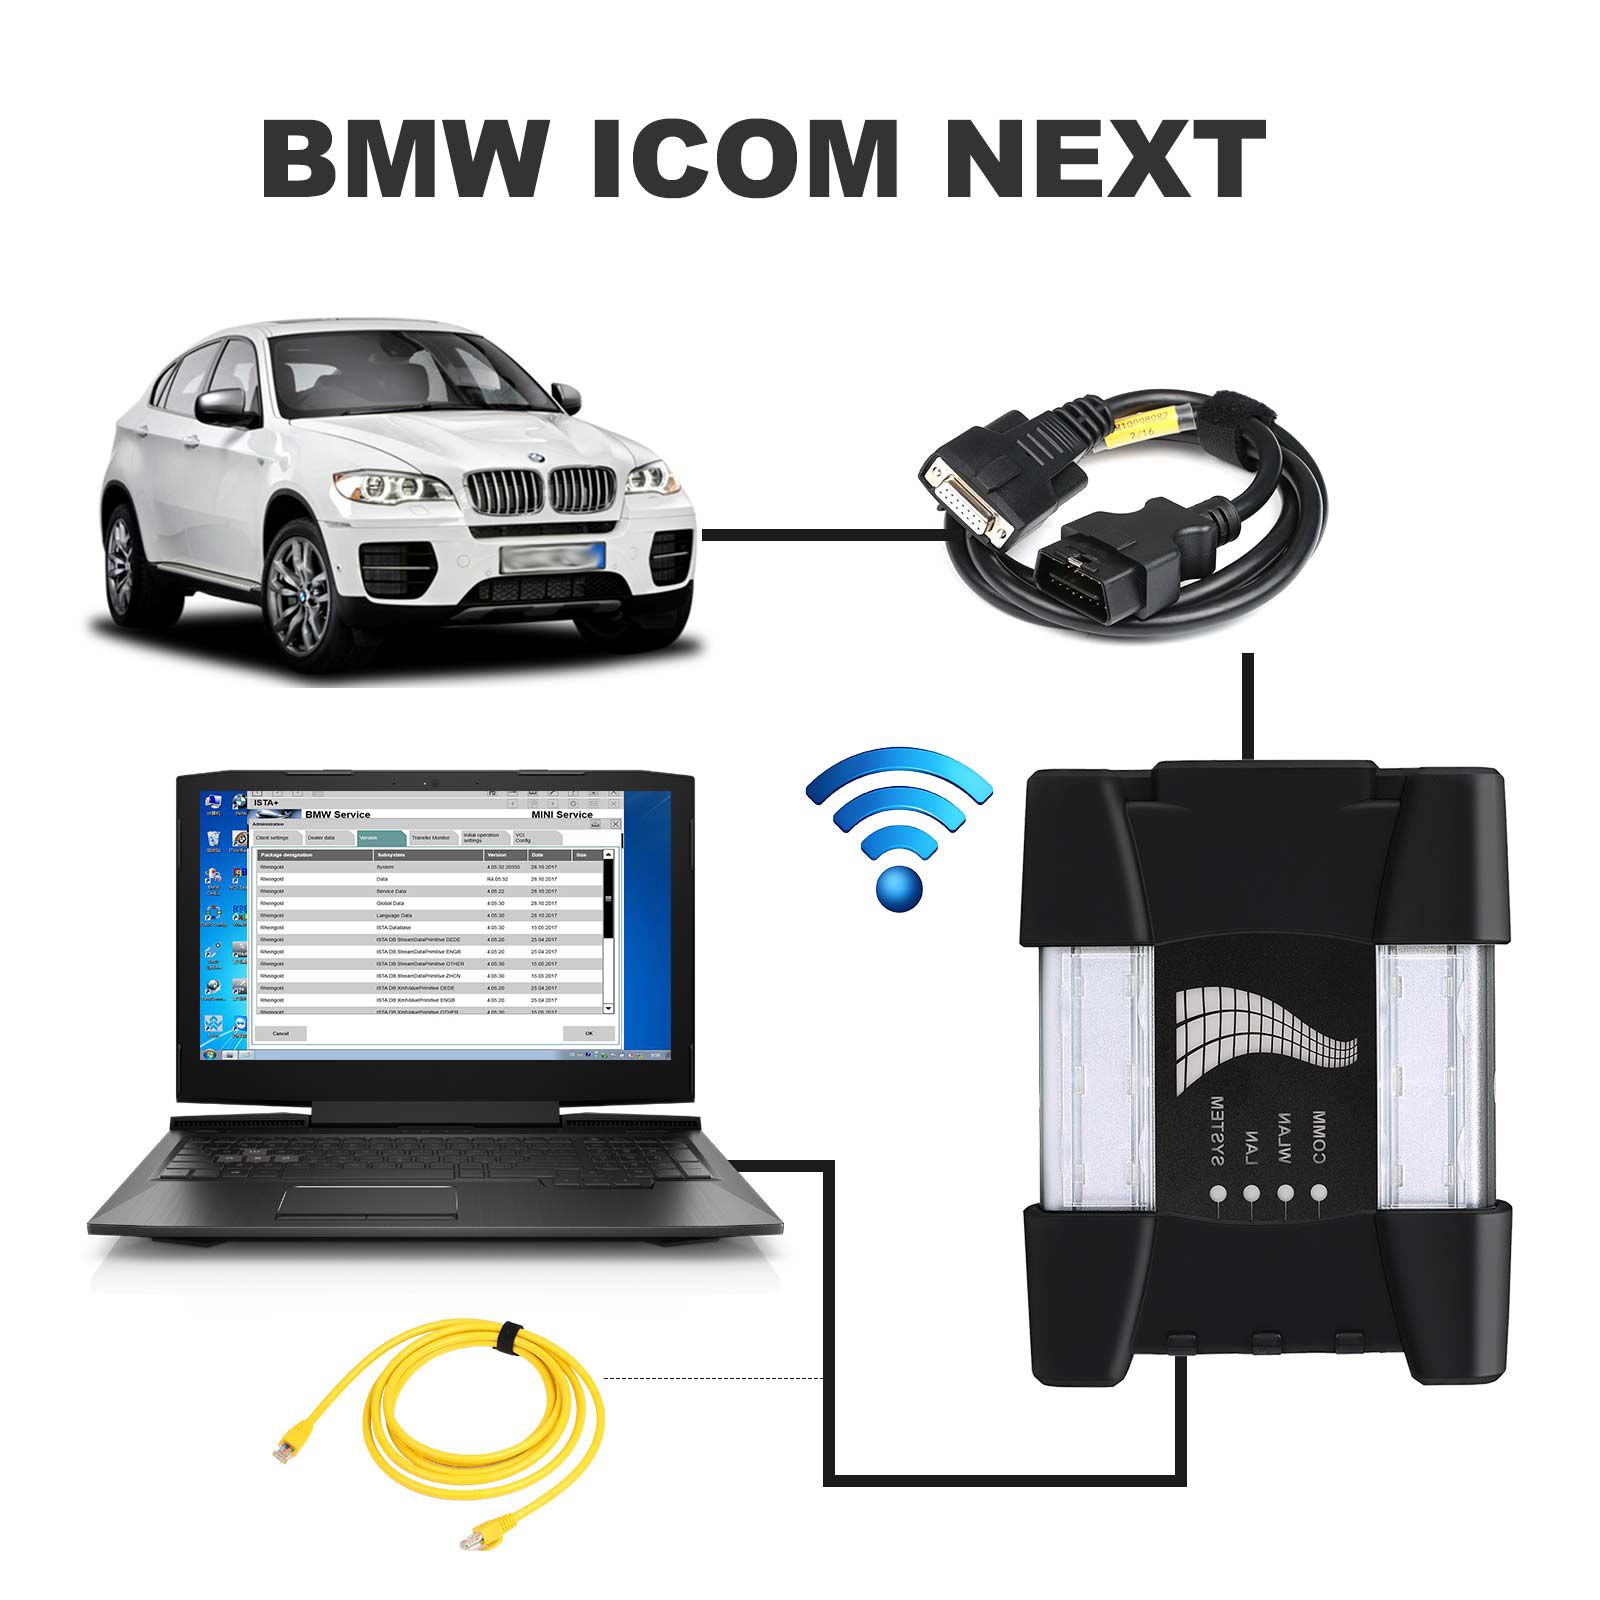 WIFI 기능을 갖춘 BMW ICOM NEXT 전문 진단 도구